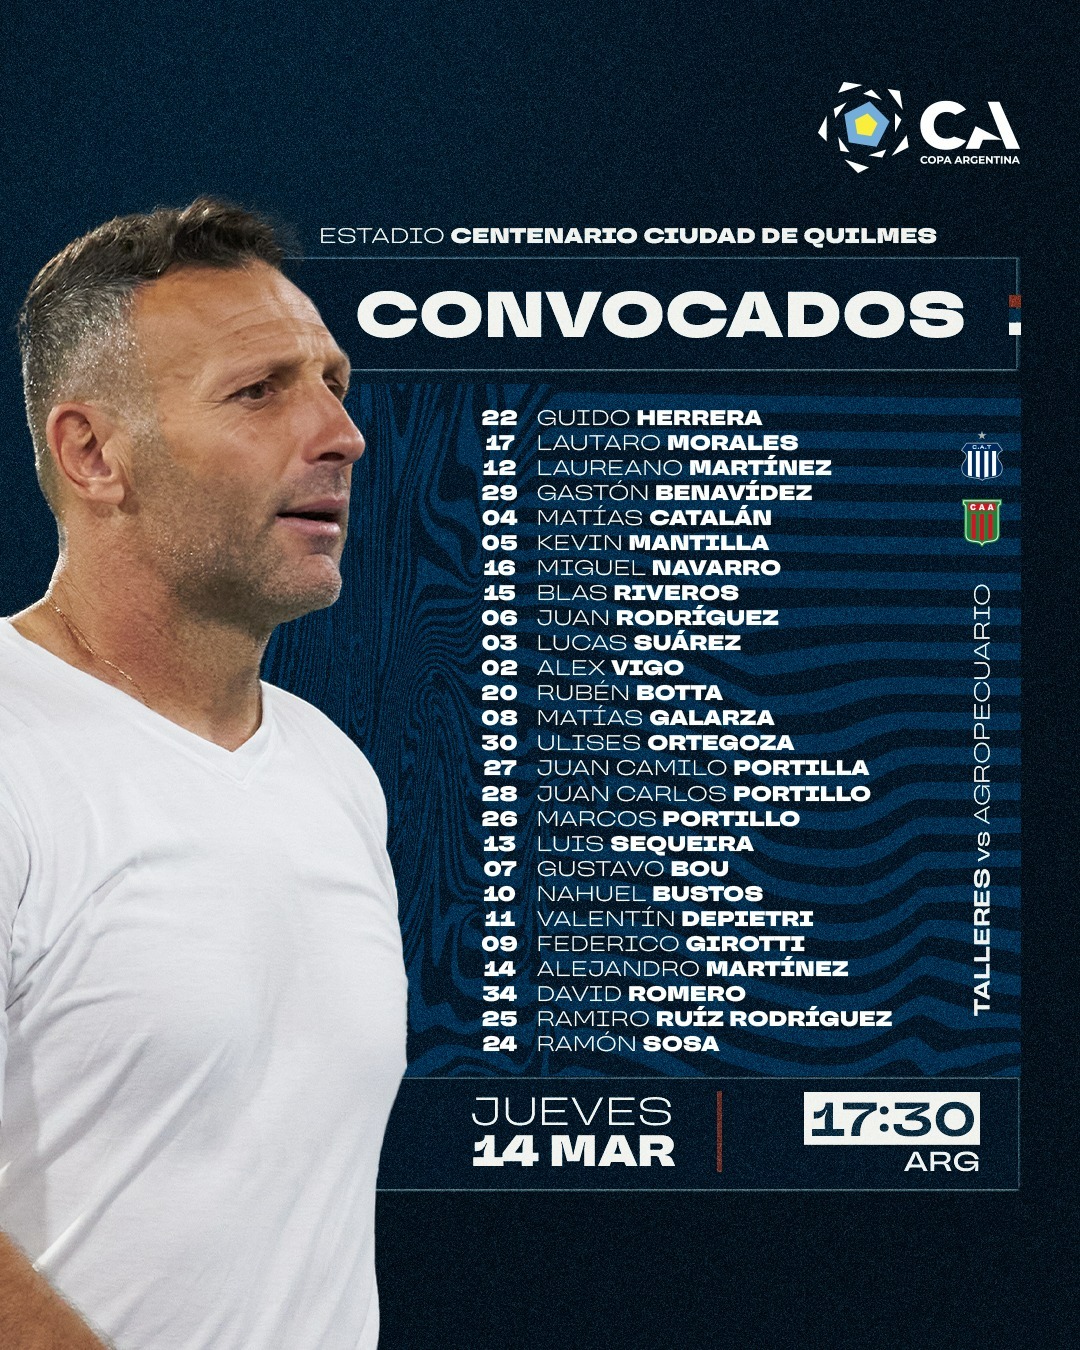 Los convocados de Talleres para el debut por Copa Argentina • Canal C